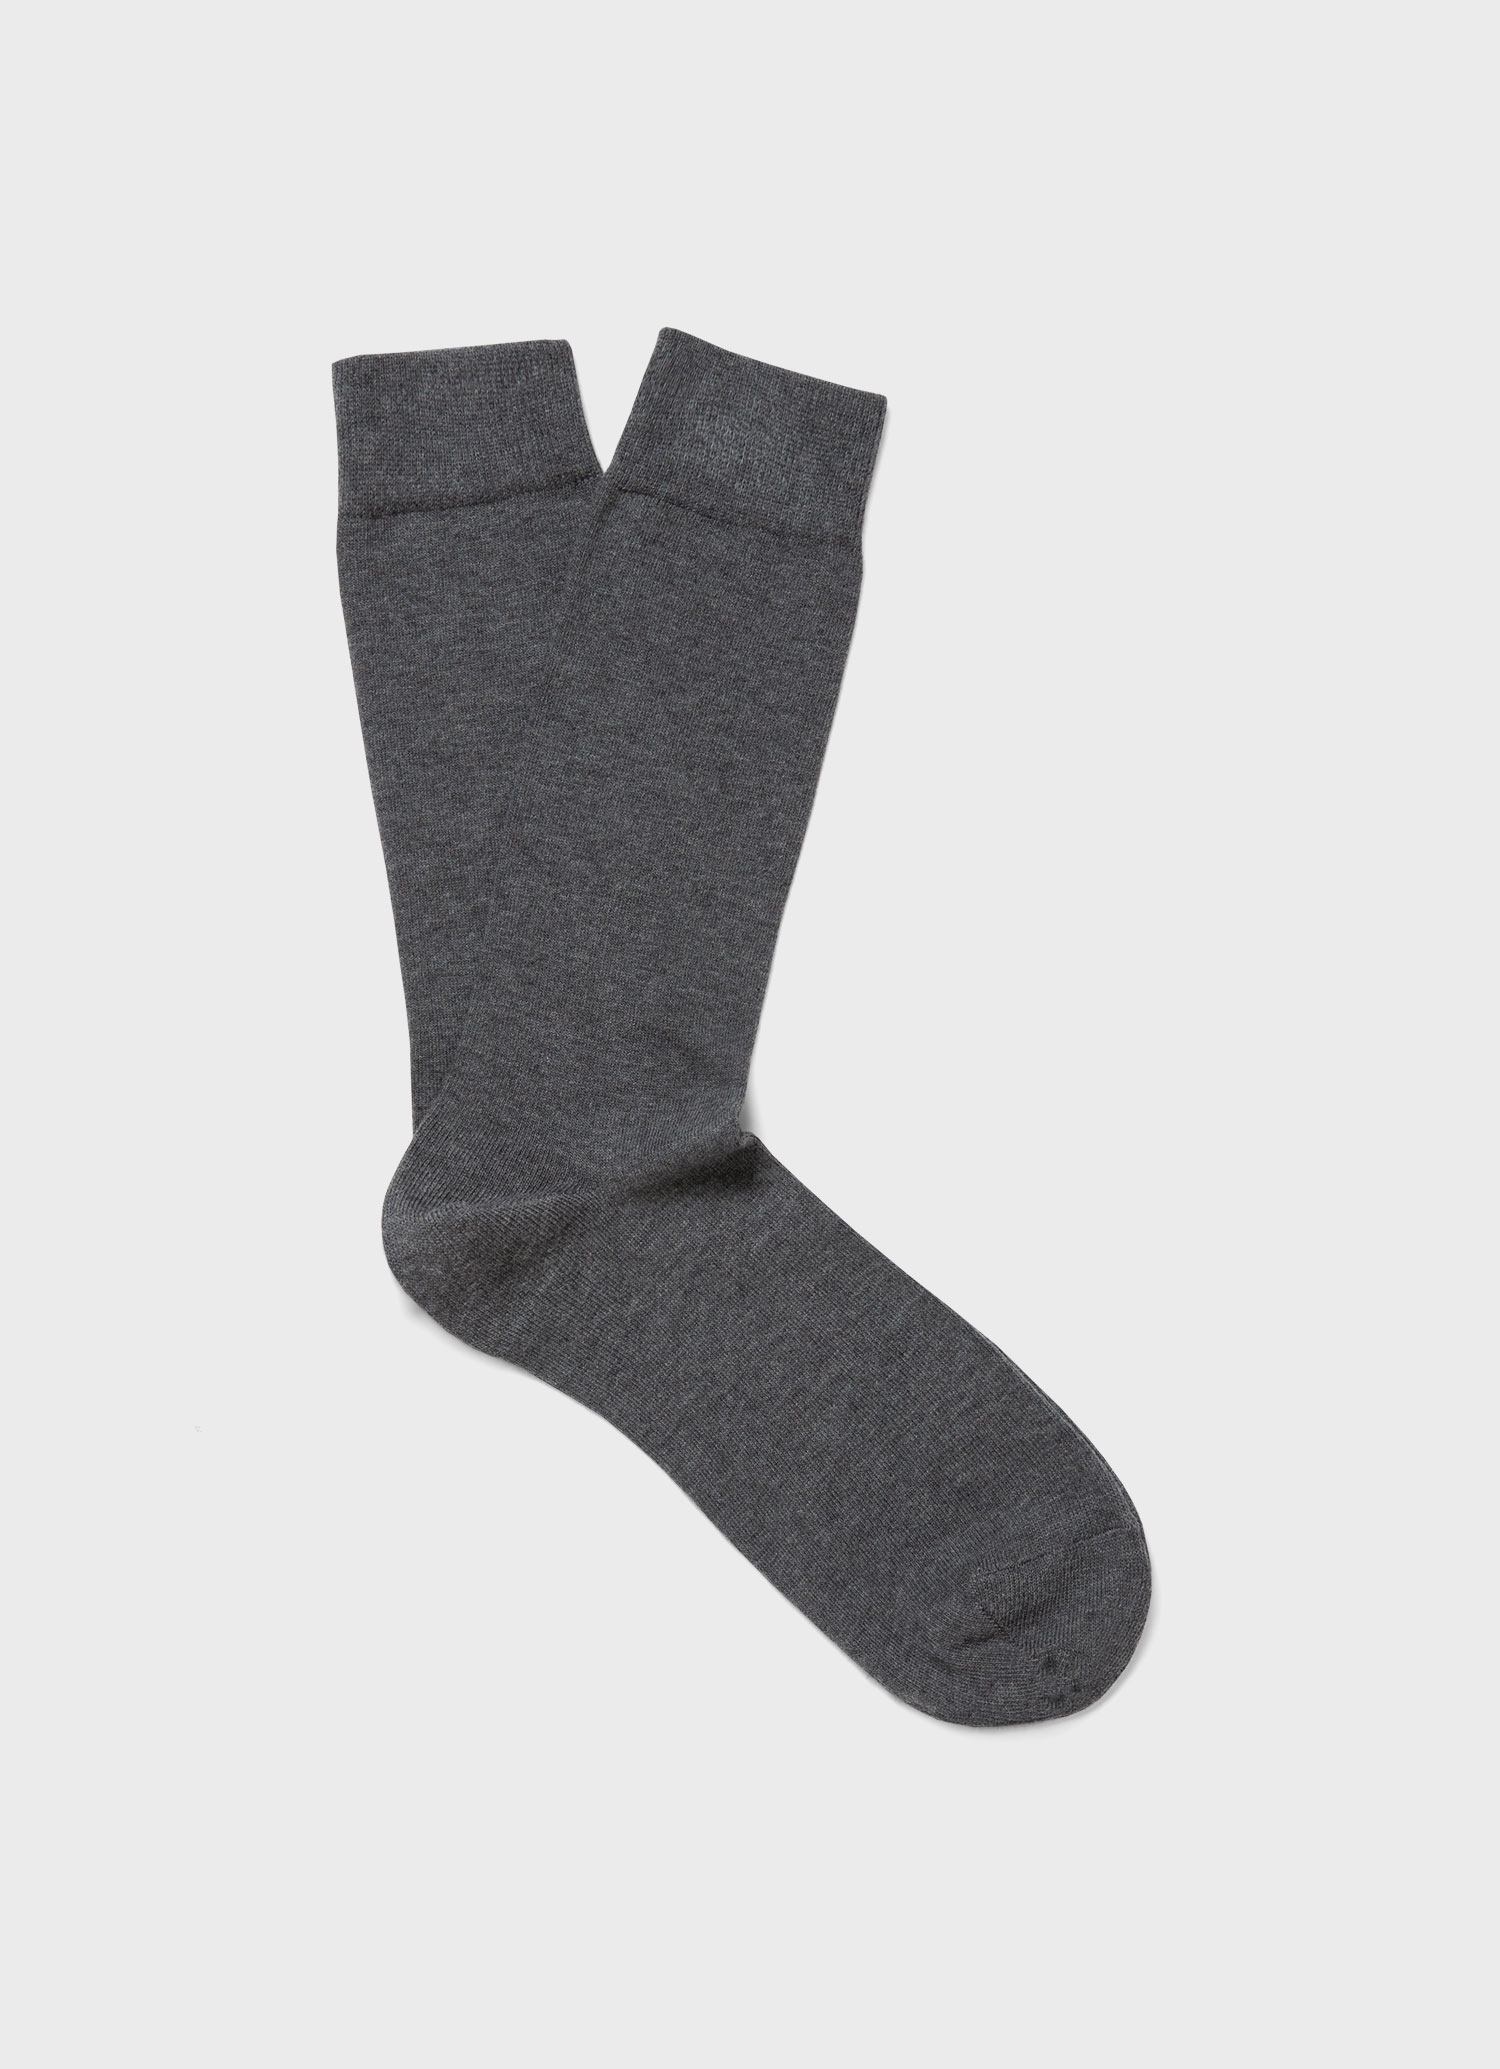 Men's Long Staple Cotton Socks in Mid Grey Melange